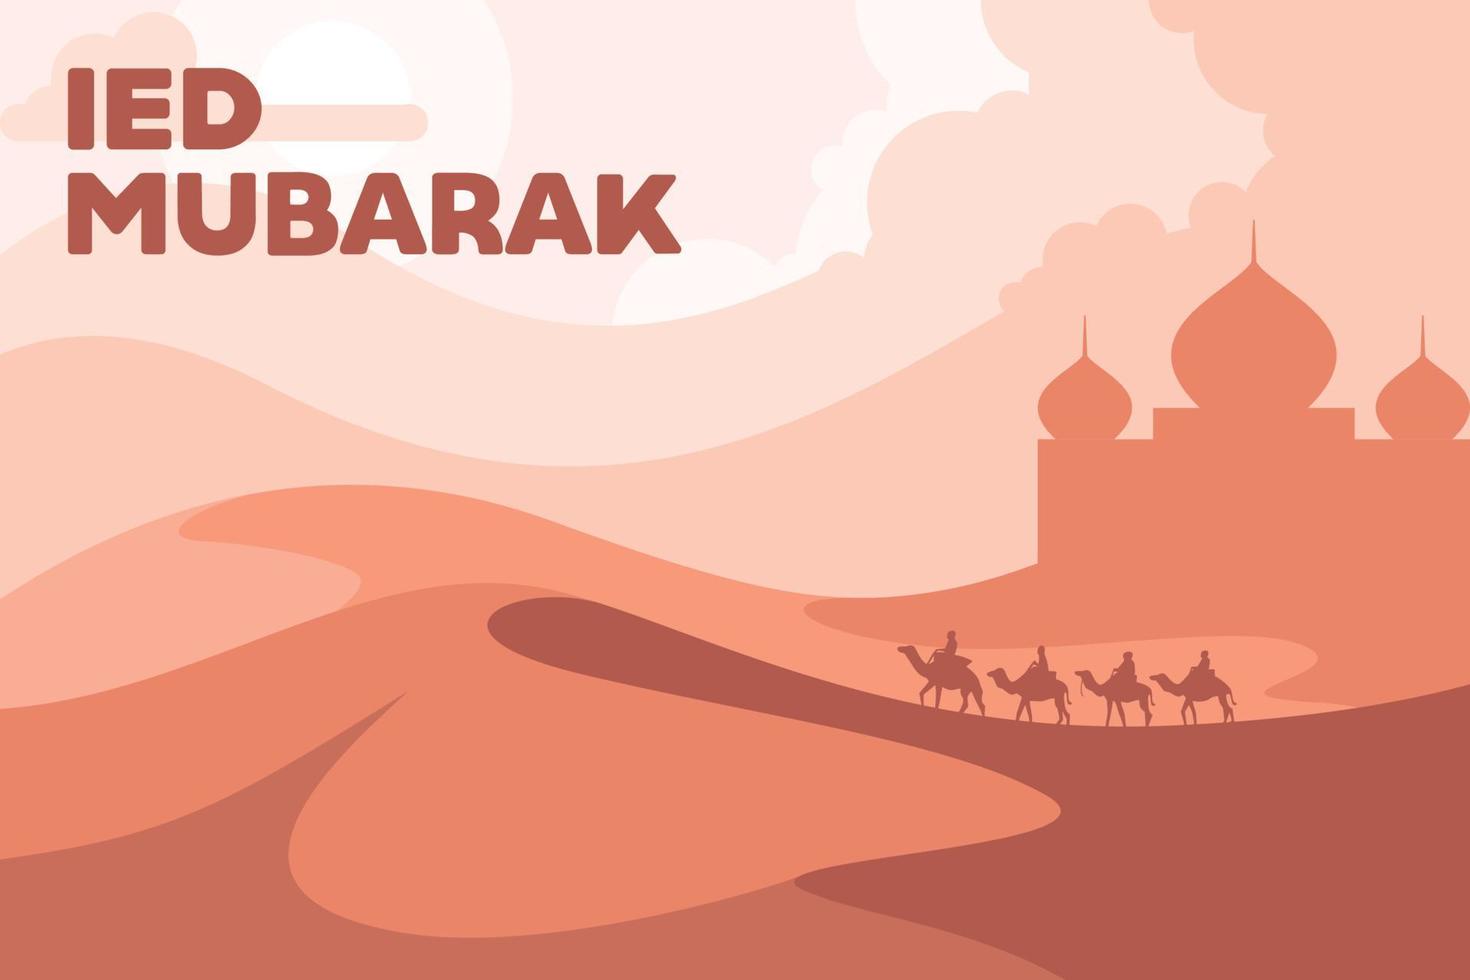 IED mubarak öken- landskap vektor